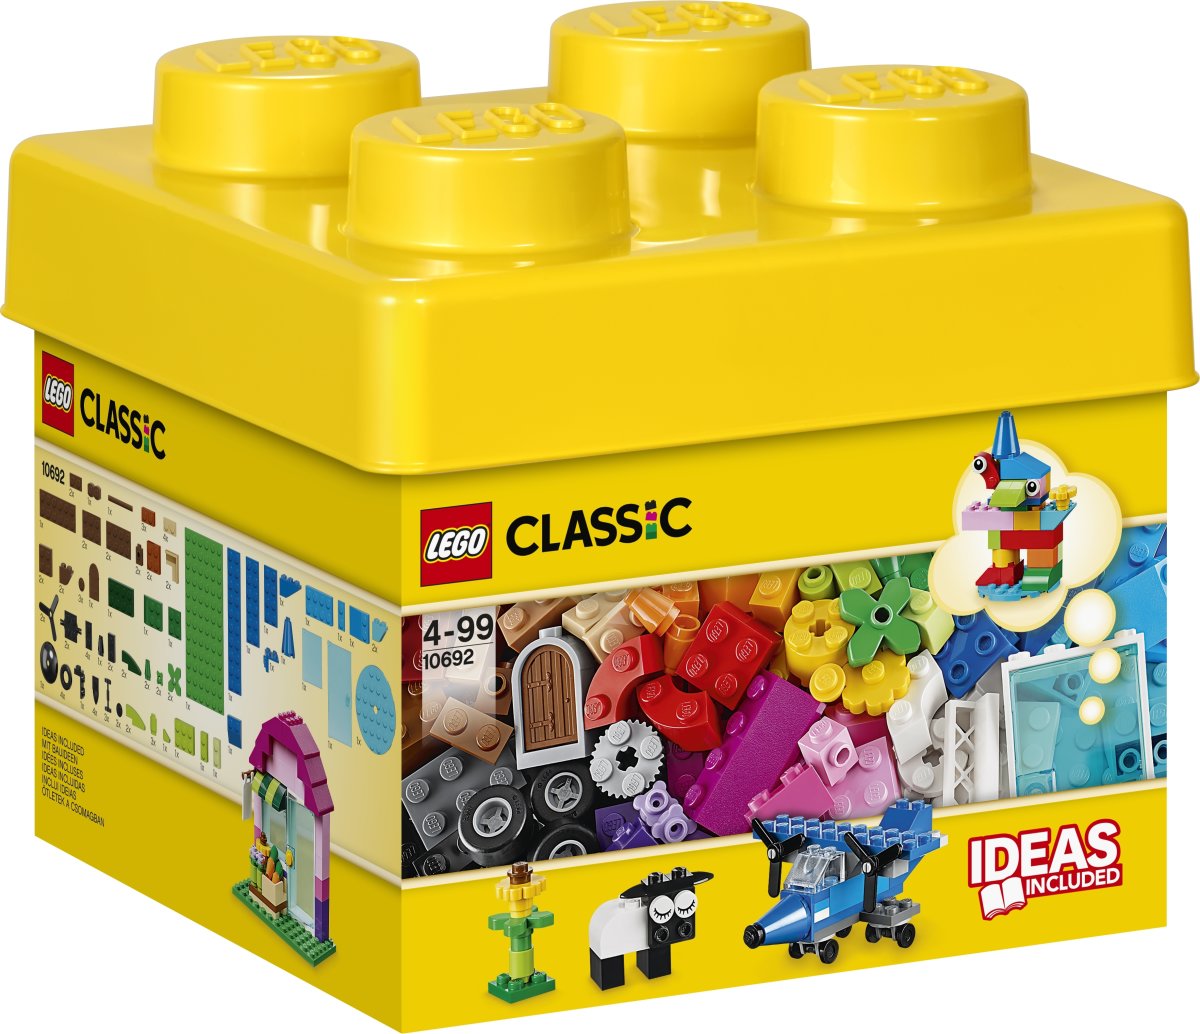 LEGO Classic 10692 Kreative klodser, 4-99 år